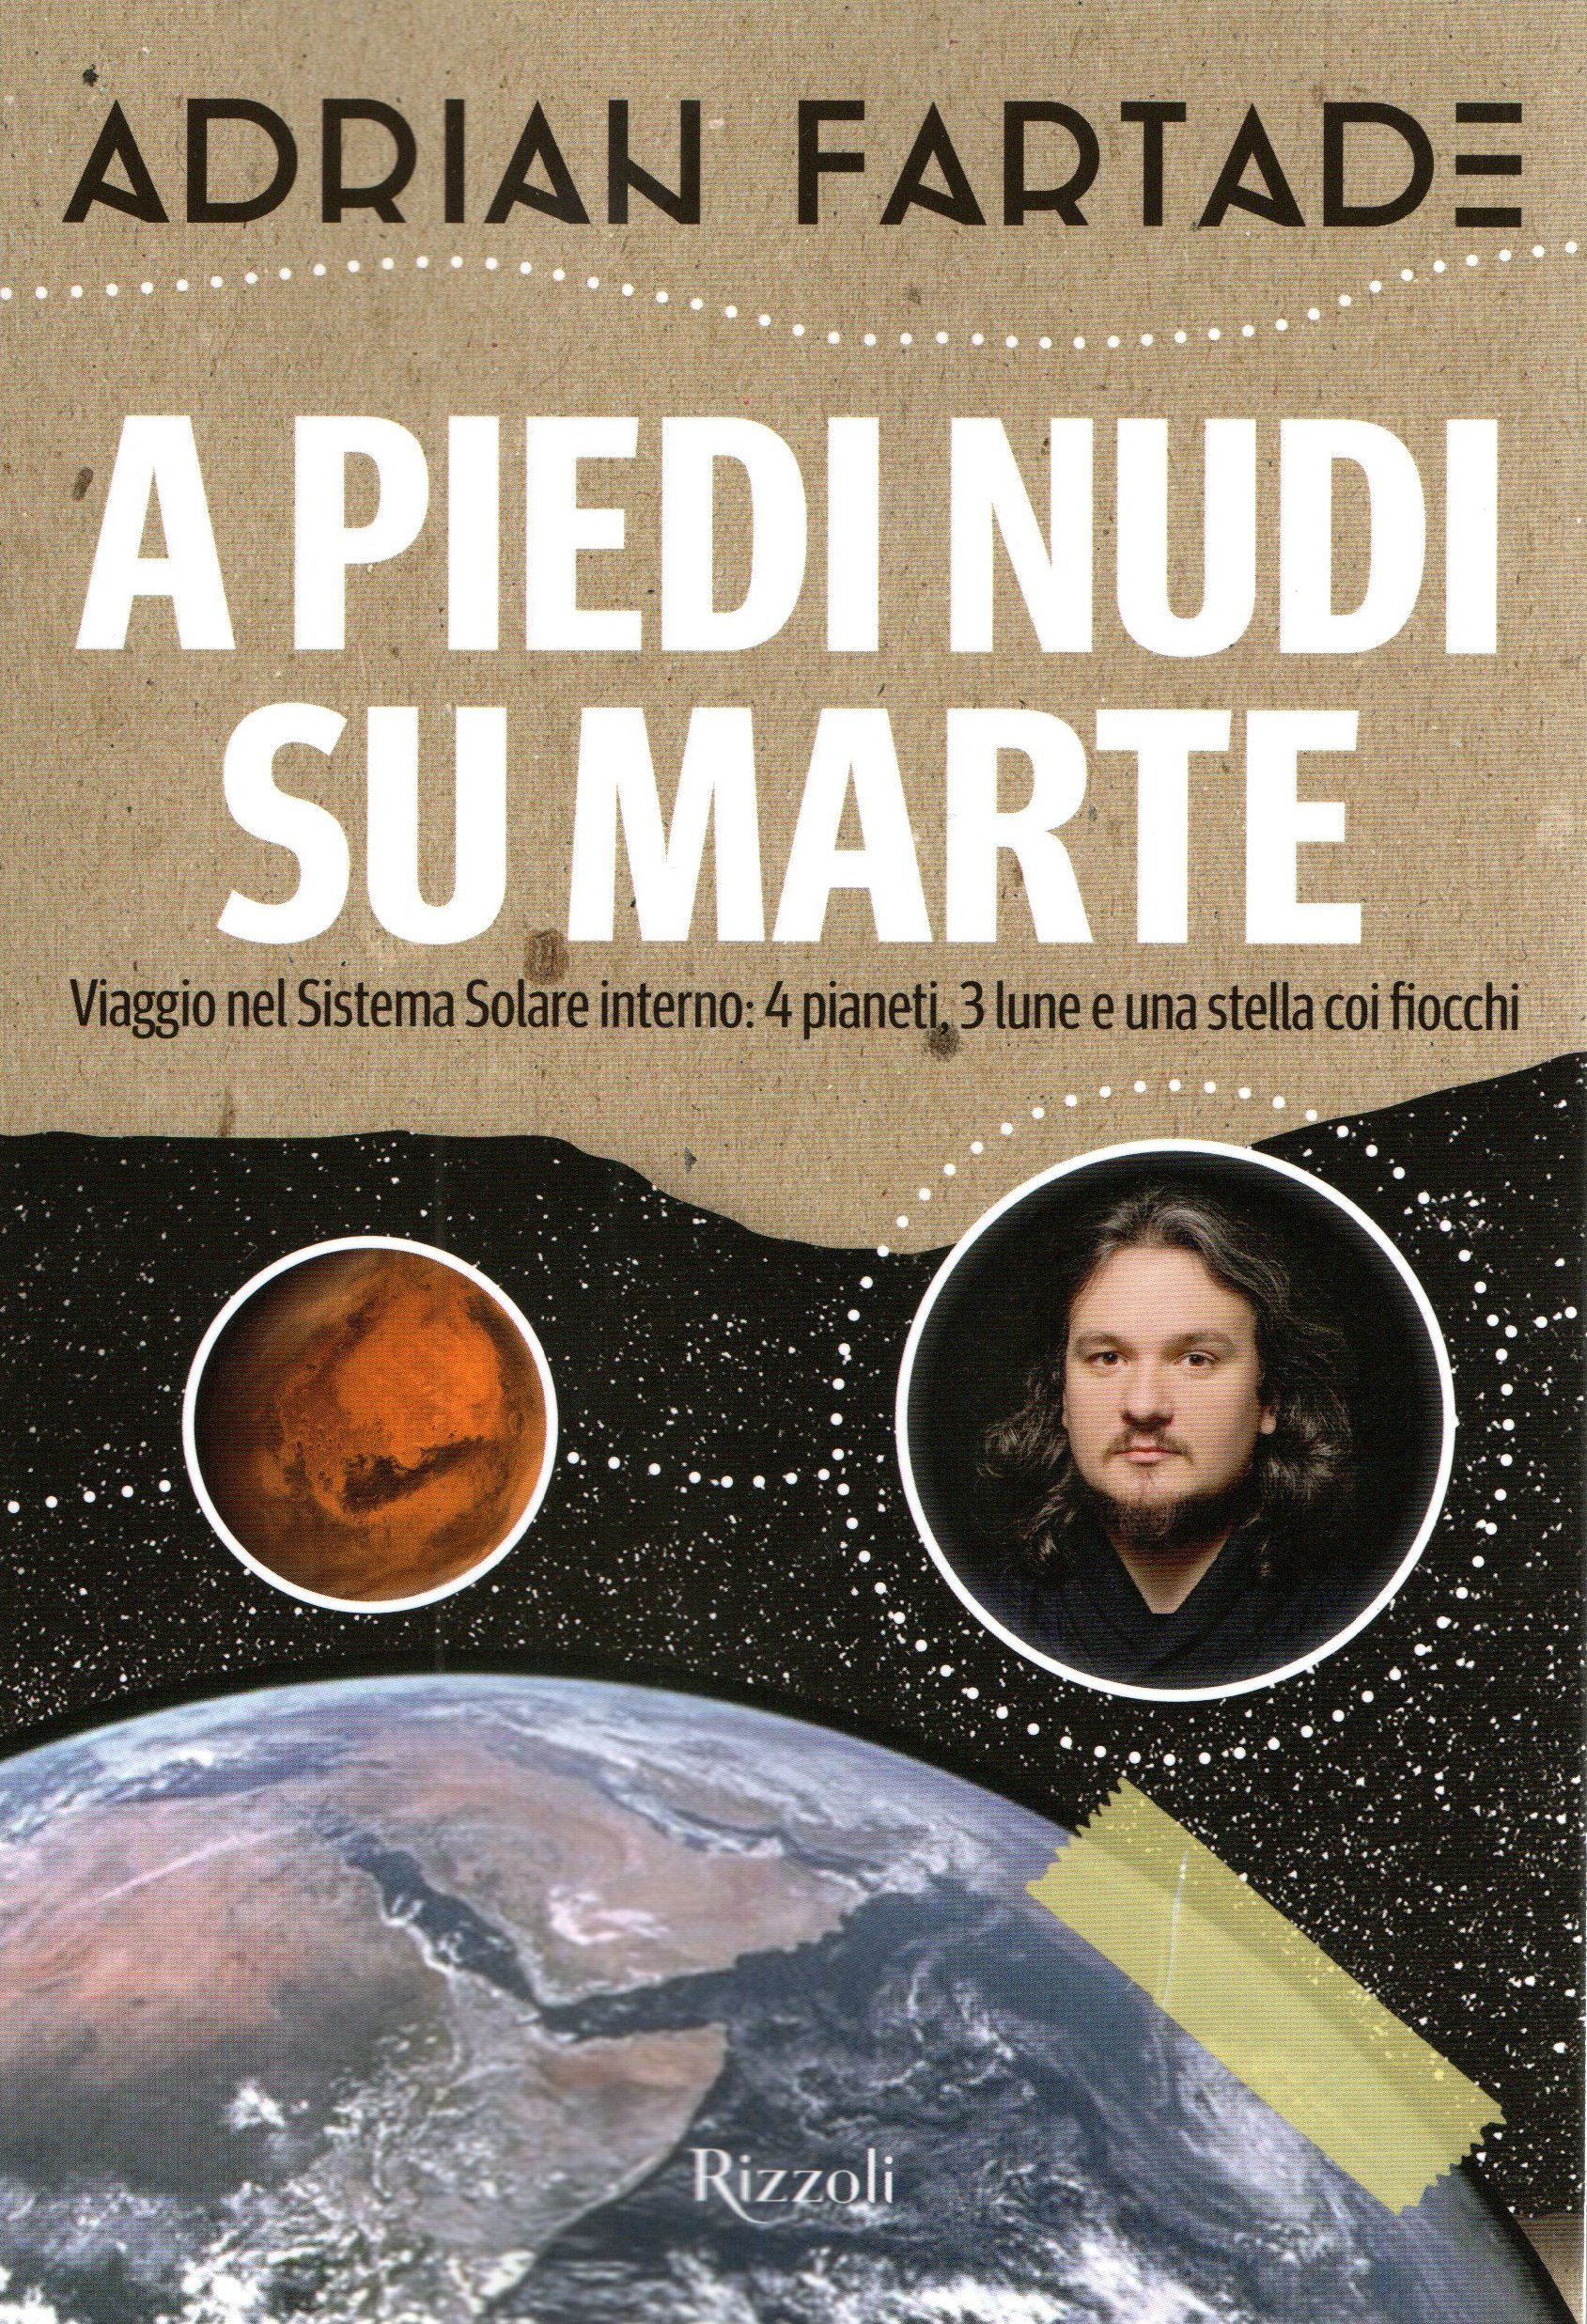 Adrian Fartade: A piedi nudi su Marte (Paperback, Italiano language, 2018, Rizzoli)